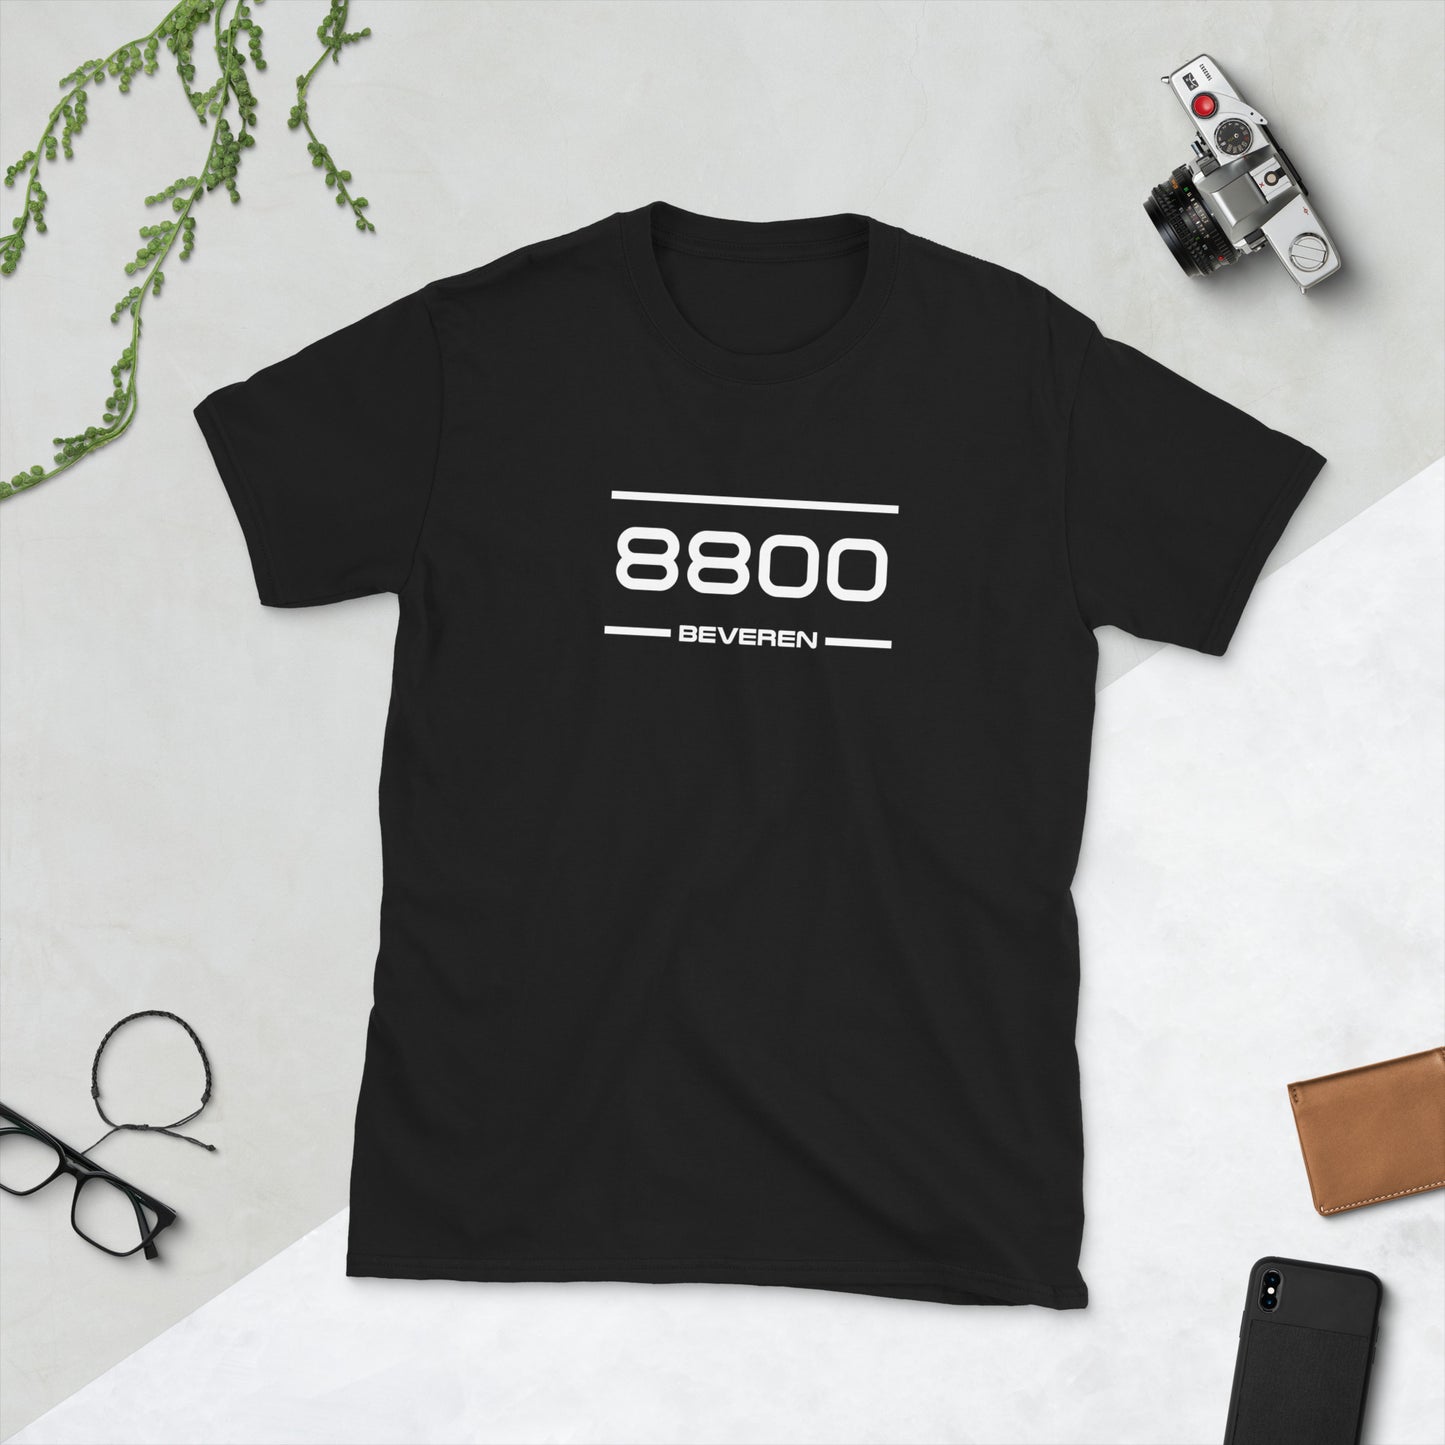 Tshirt - 8800 - Beveren